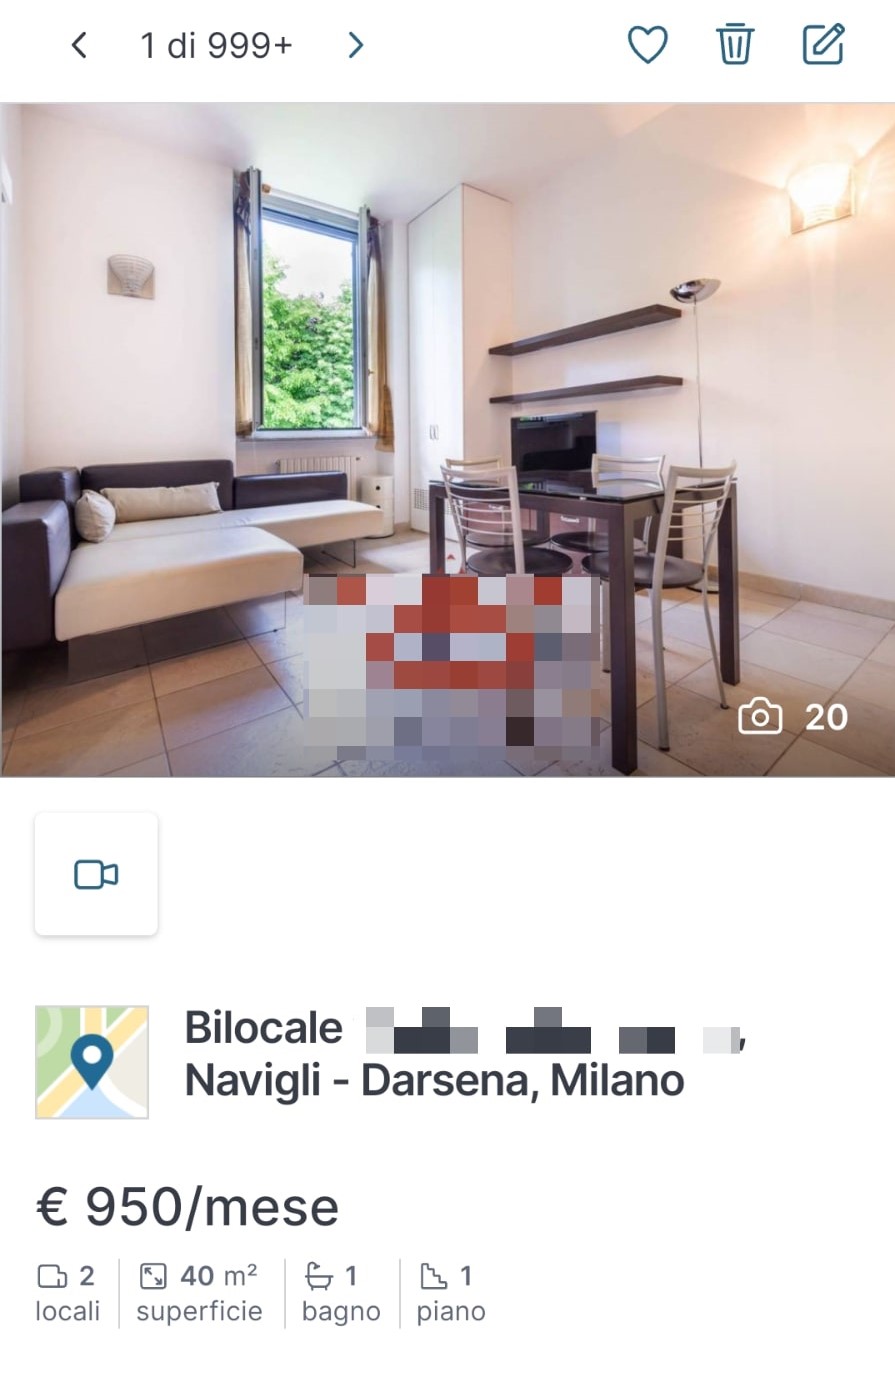 Un bilocale a 950 euro zona naviglio pavese, Milano. Fonte: immobiliare.it